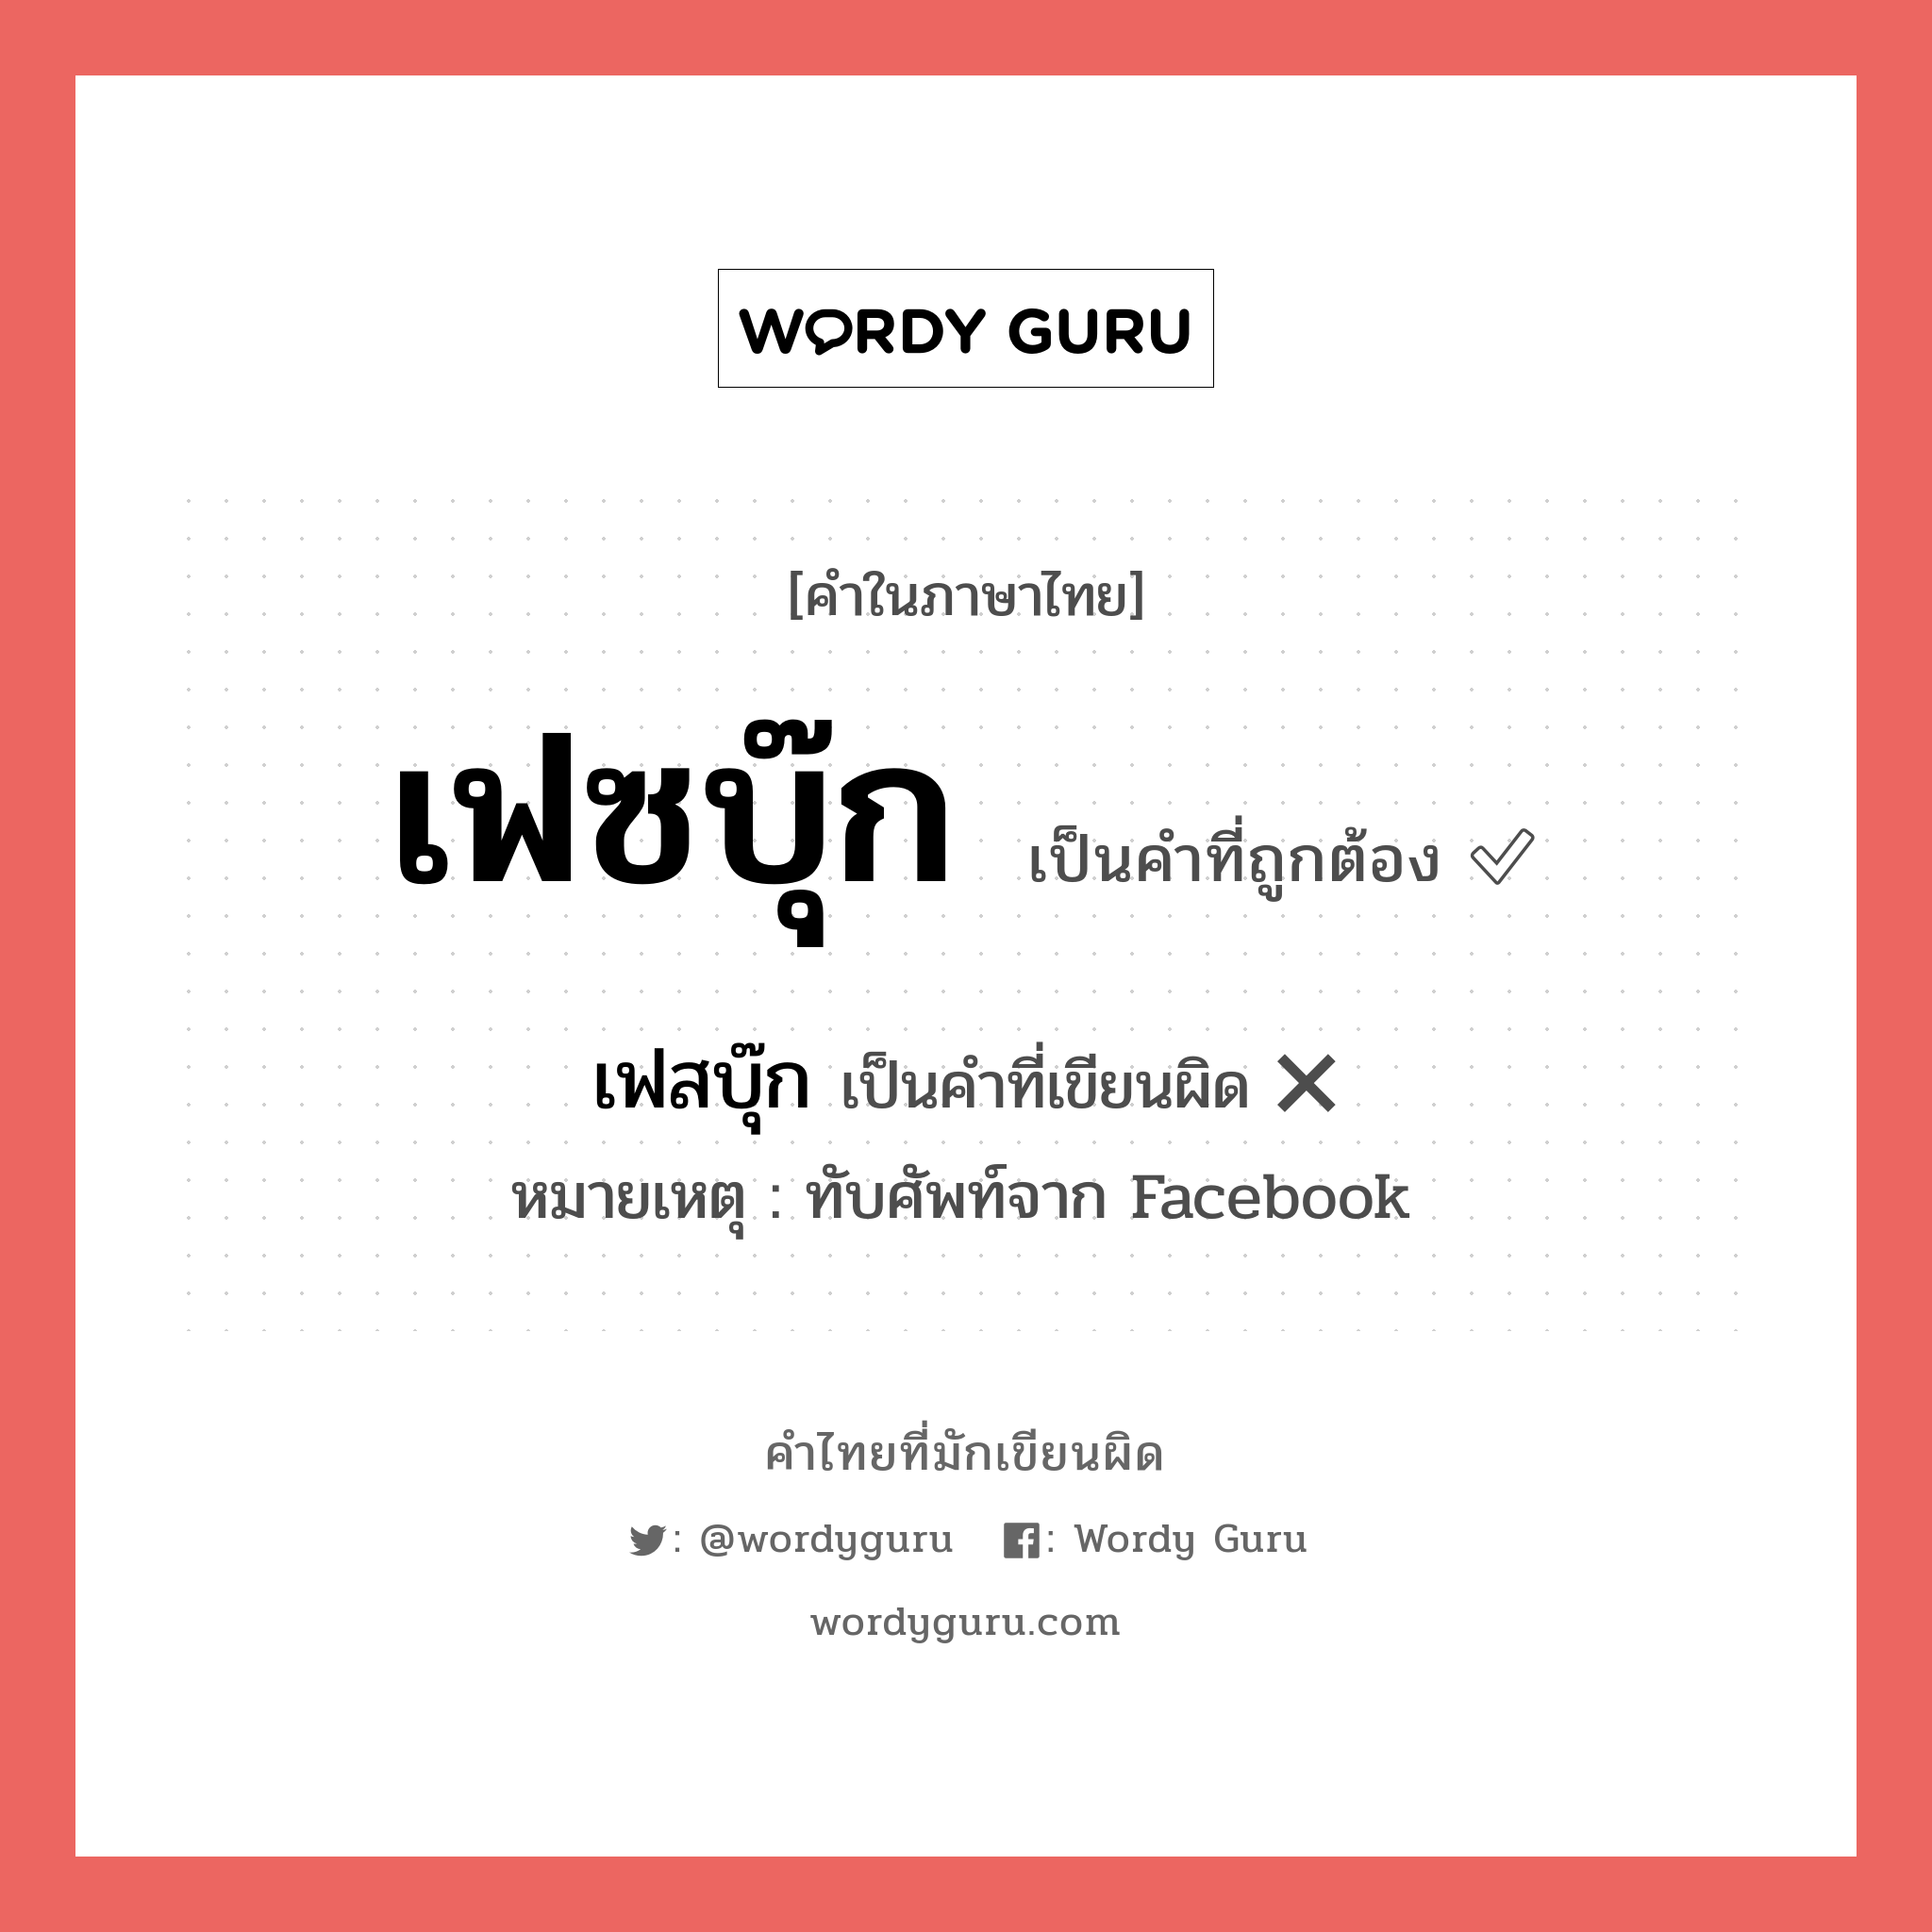 เฟซบุ๊ก หรือ เฟสบุ๊ก เขียนยังไง? คำไหนเขียนถูก?, คำในภาษาไทยที่มักเขียนผิด เฟซบุ๊ก คำที่ผิด ❌ เฟสบุ๊ก หมายเหตุ ทับศัพท์จาก Facebook